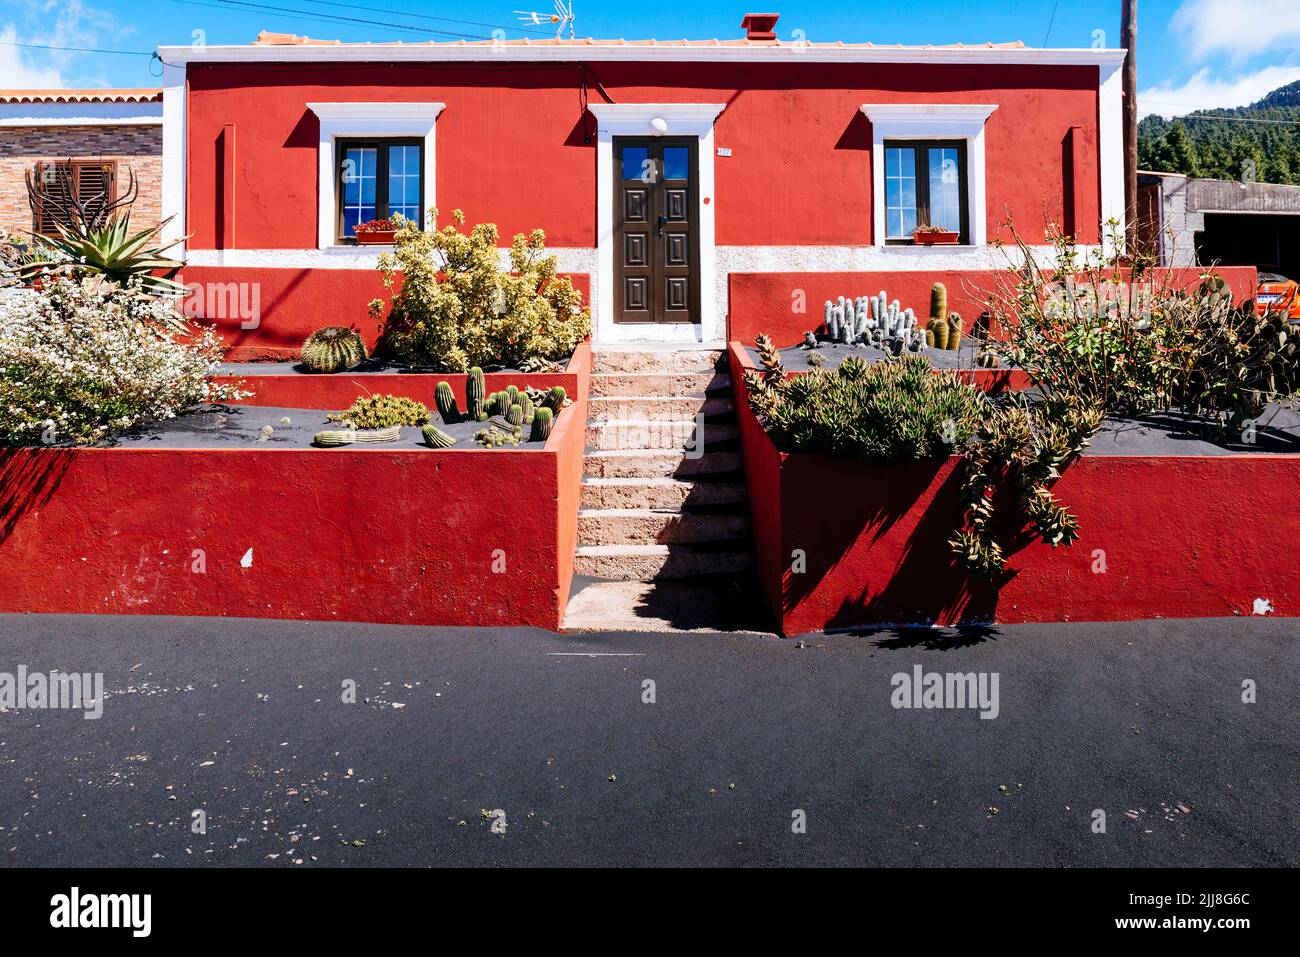 Ansammlung von vulkanischer Asche in einem Haus. El Paraiso, El Paso, La Palma, Kanarische Inseln, Spanien Stockfoto